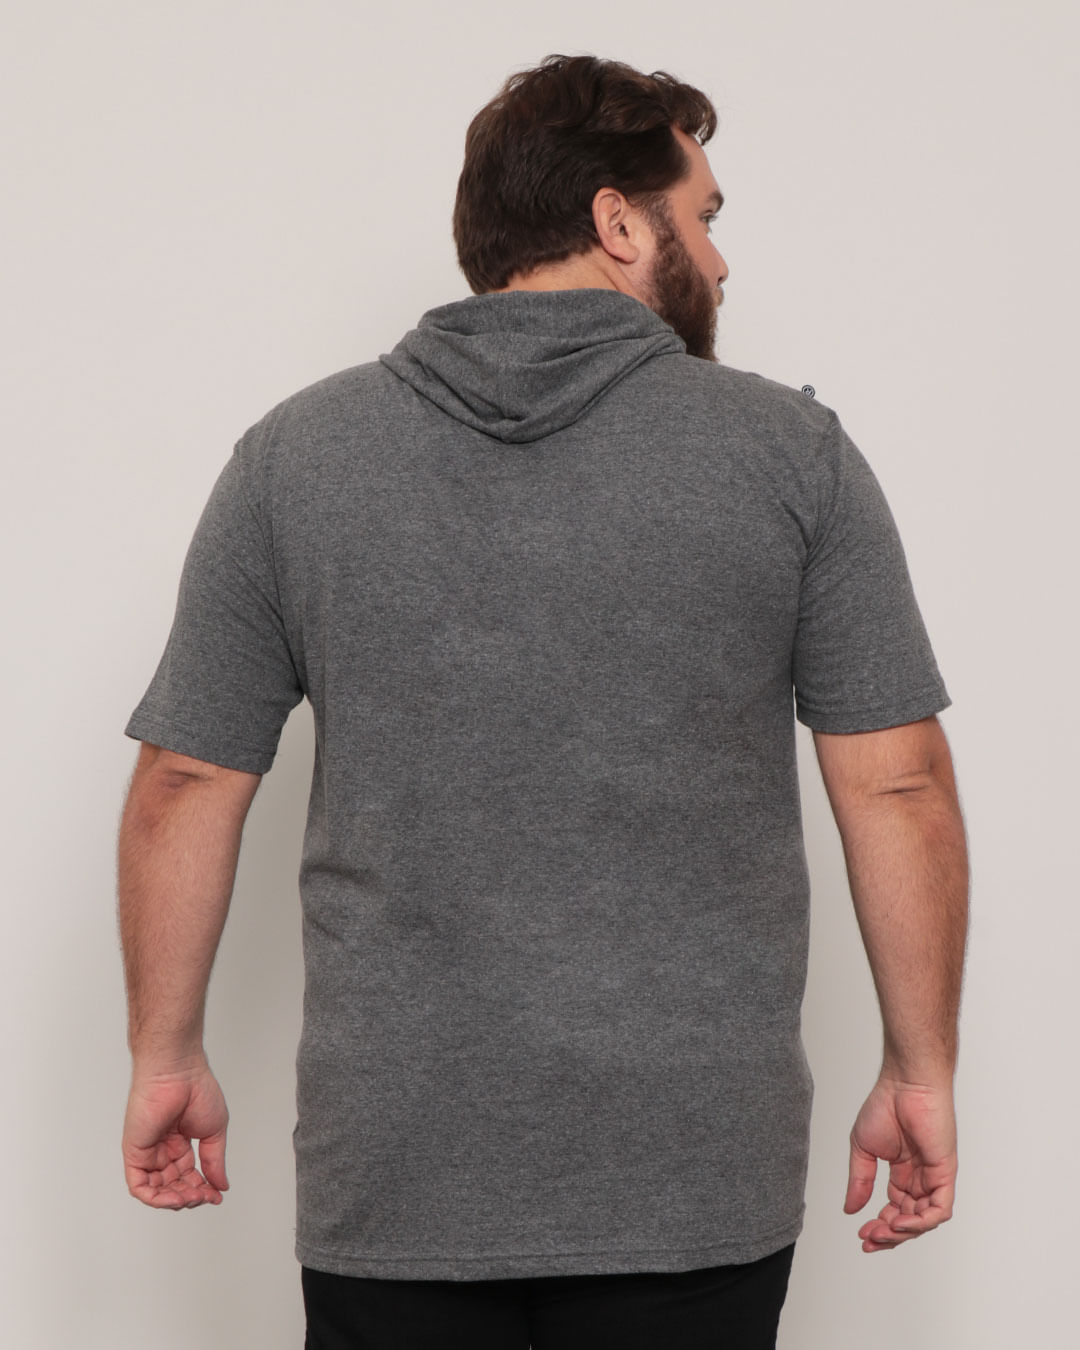 Camiseta-Plus-Size-Masculino-Overcore-Mescla-Medio